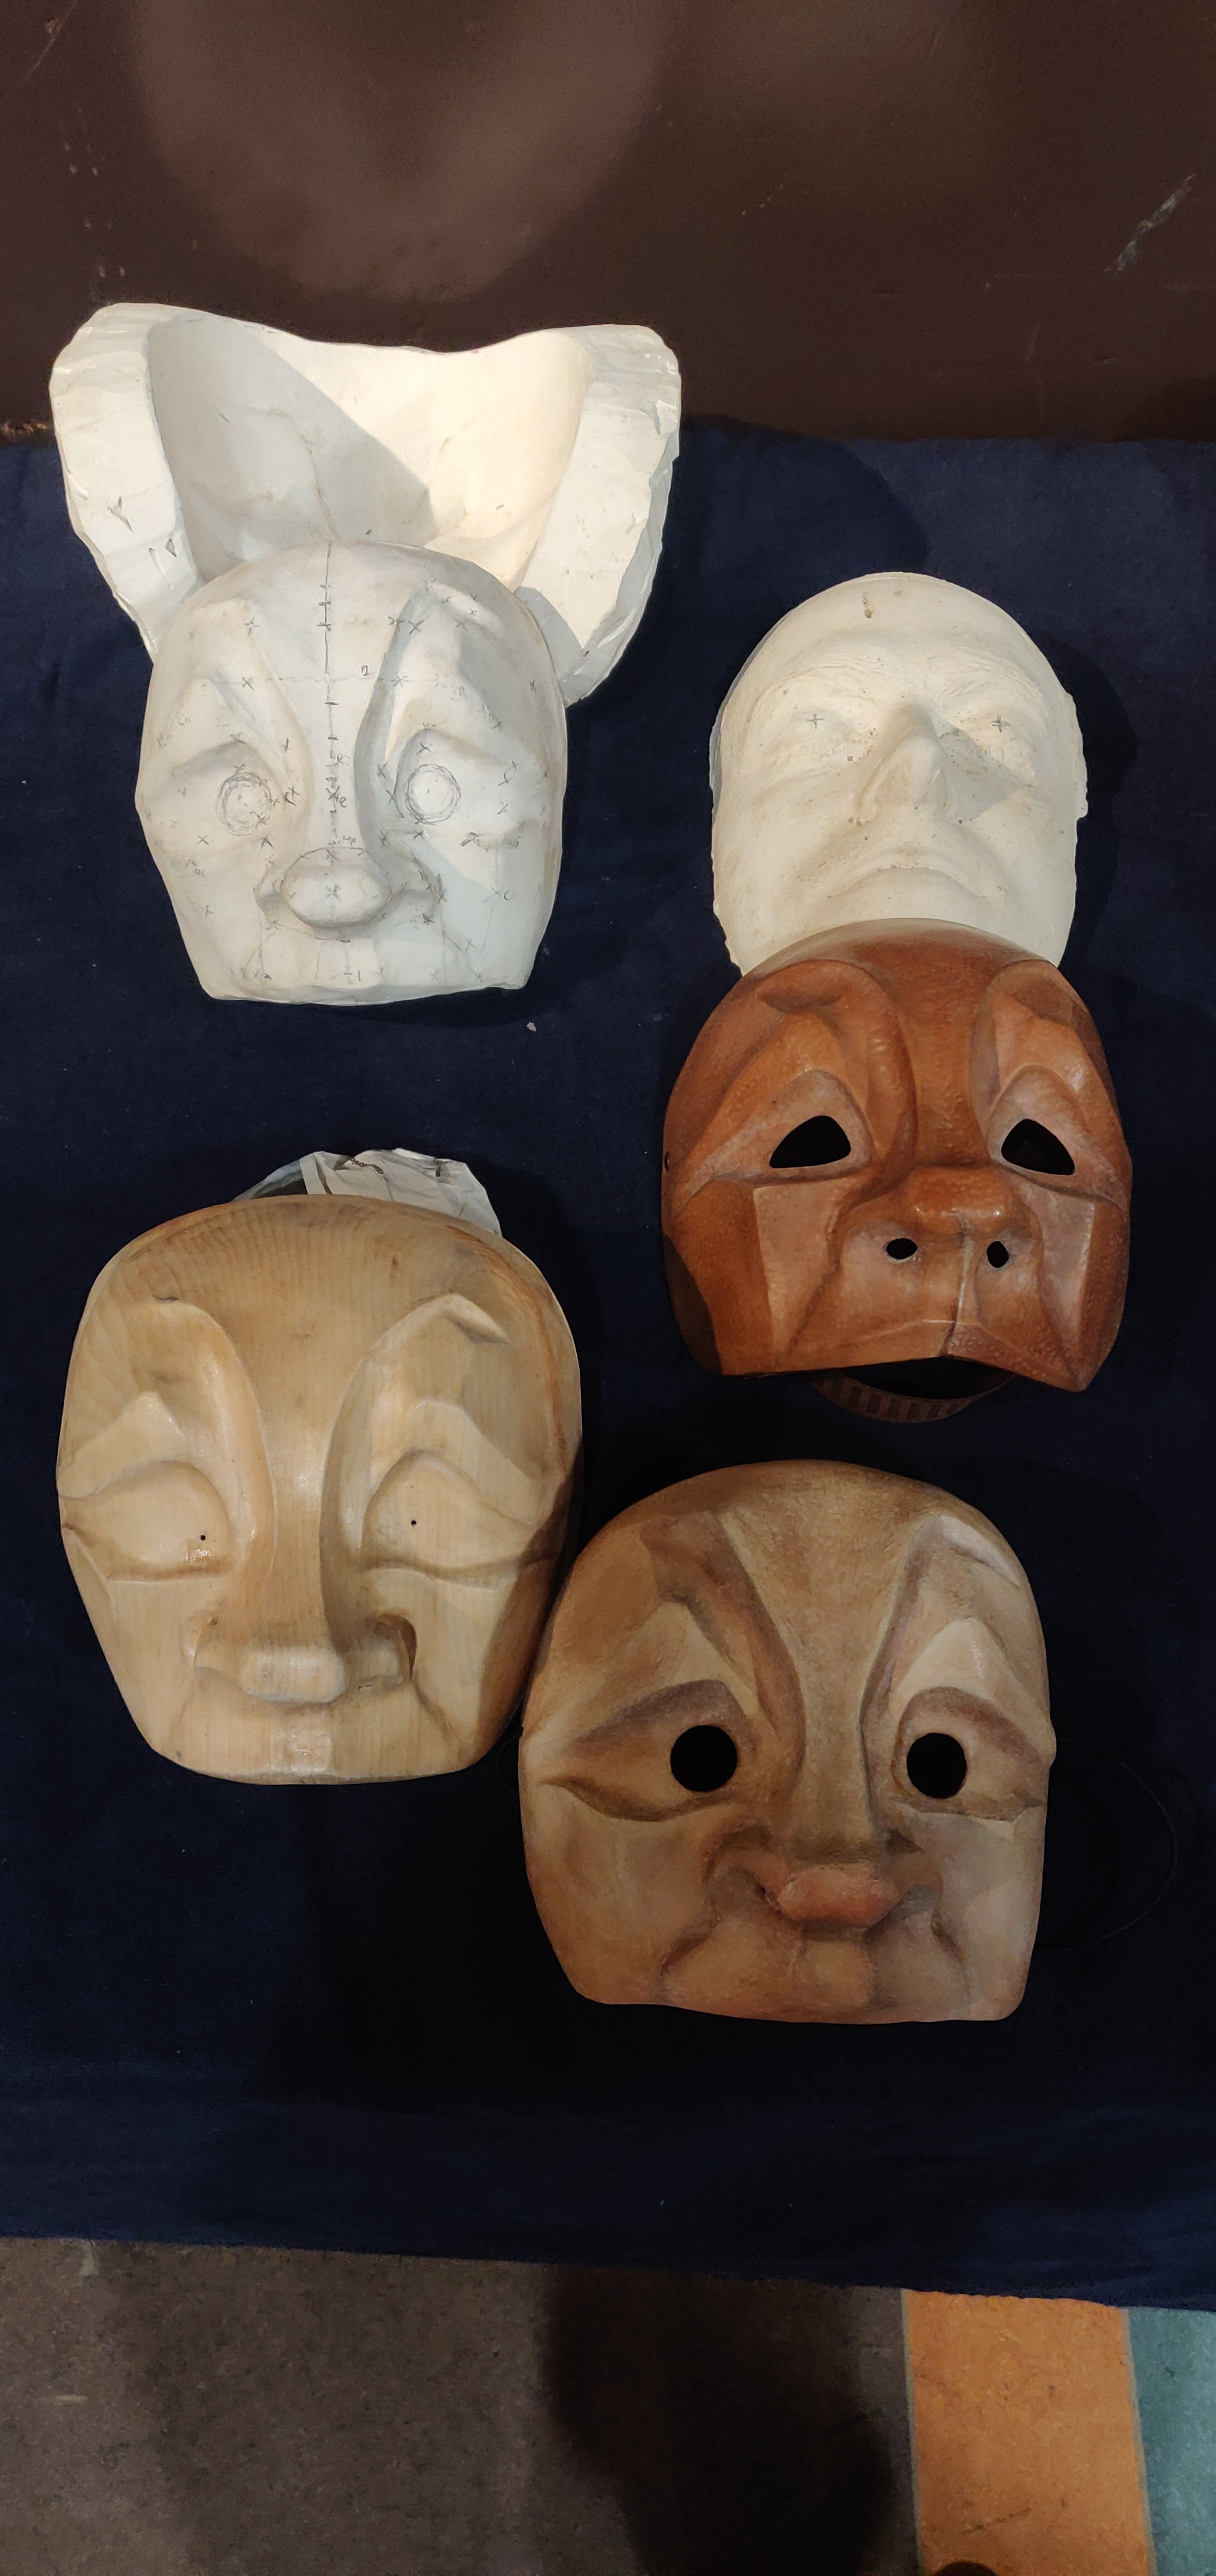 Plaster negative, plaster positive, wooden matrix, life cast, leather mask, papier mache mask